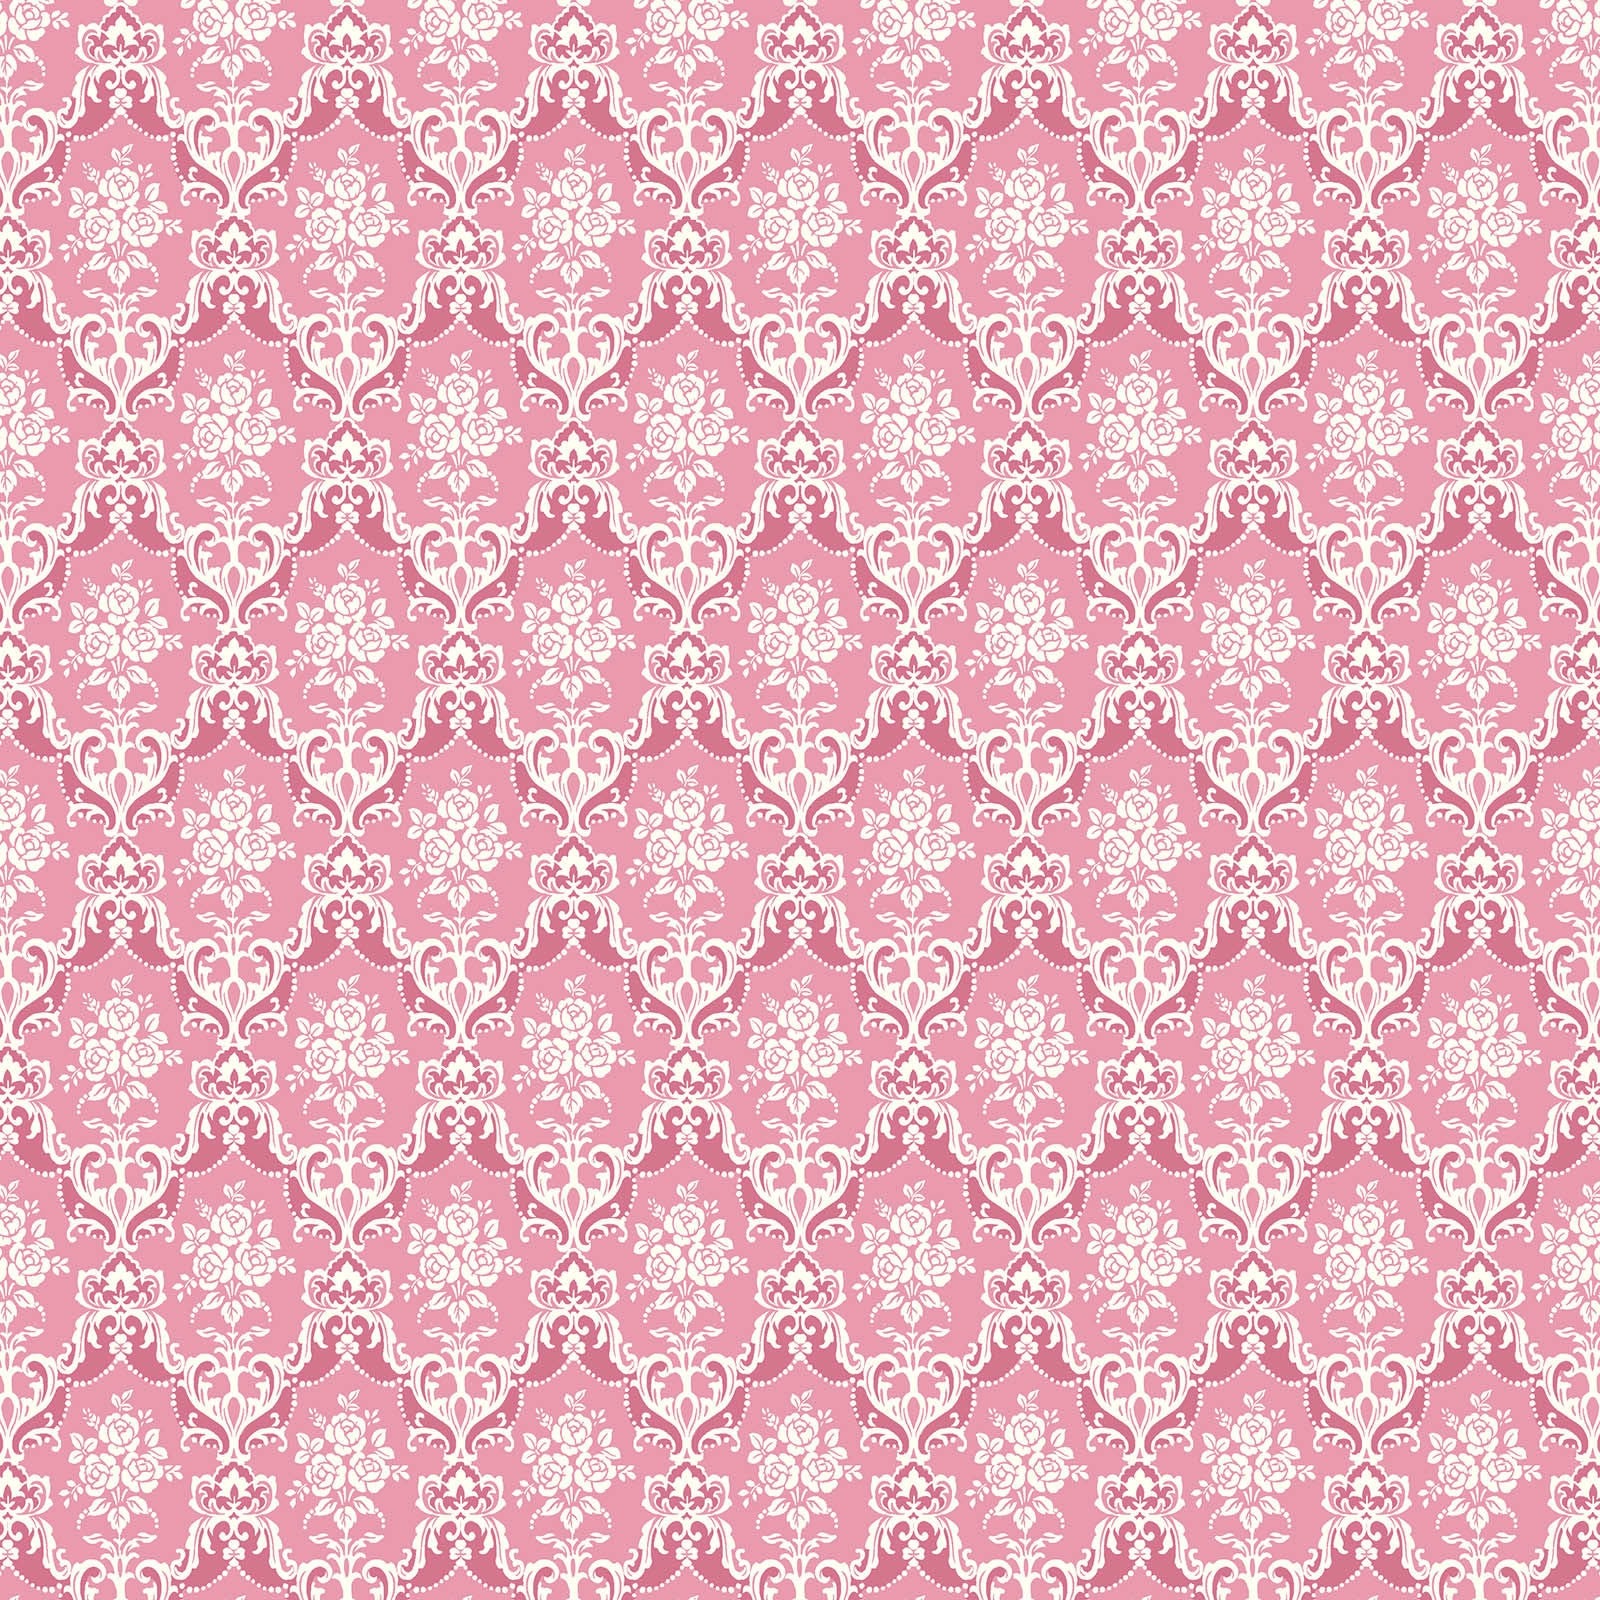 Rose Waltz RuRu Bouquet cotton fabric by Quilt Gate Ru2450-15F Dark Pink